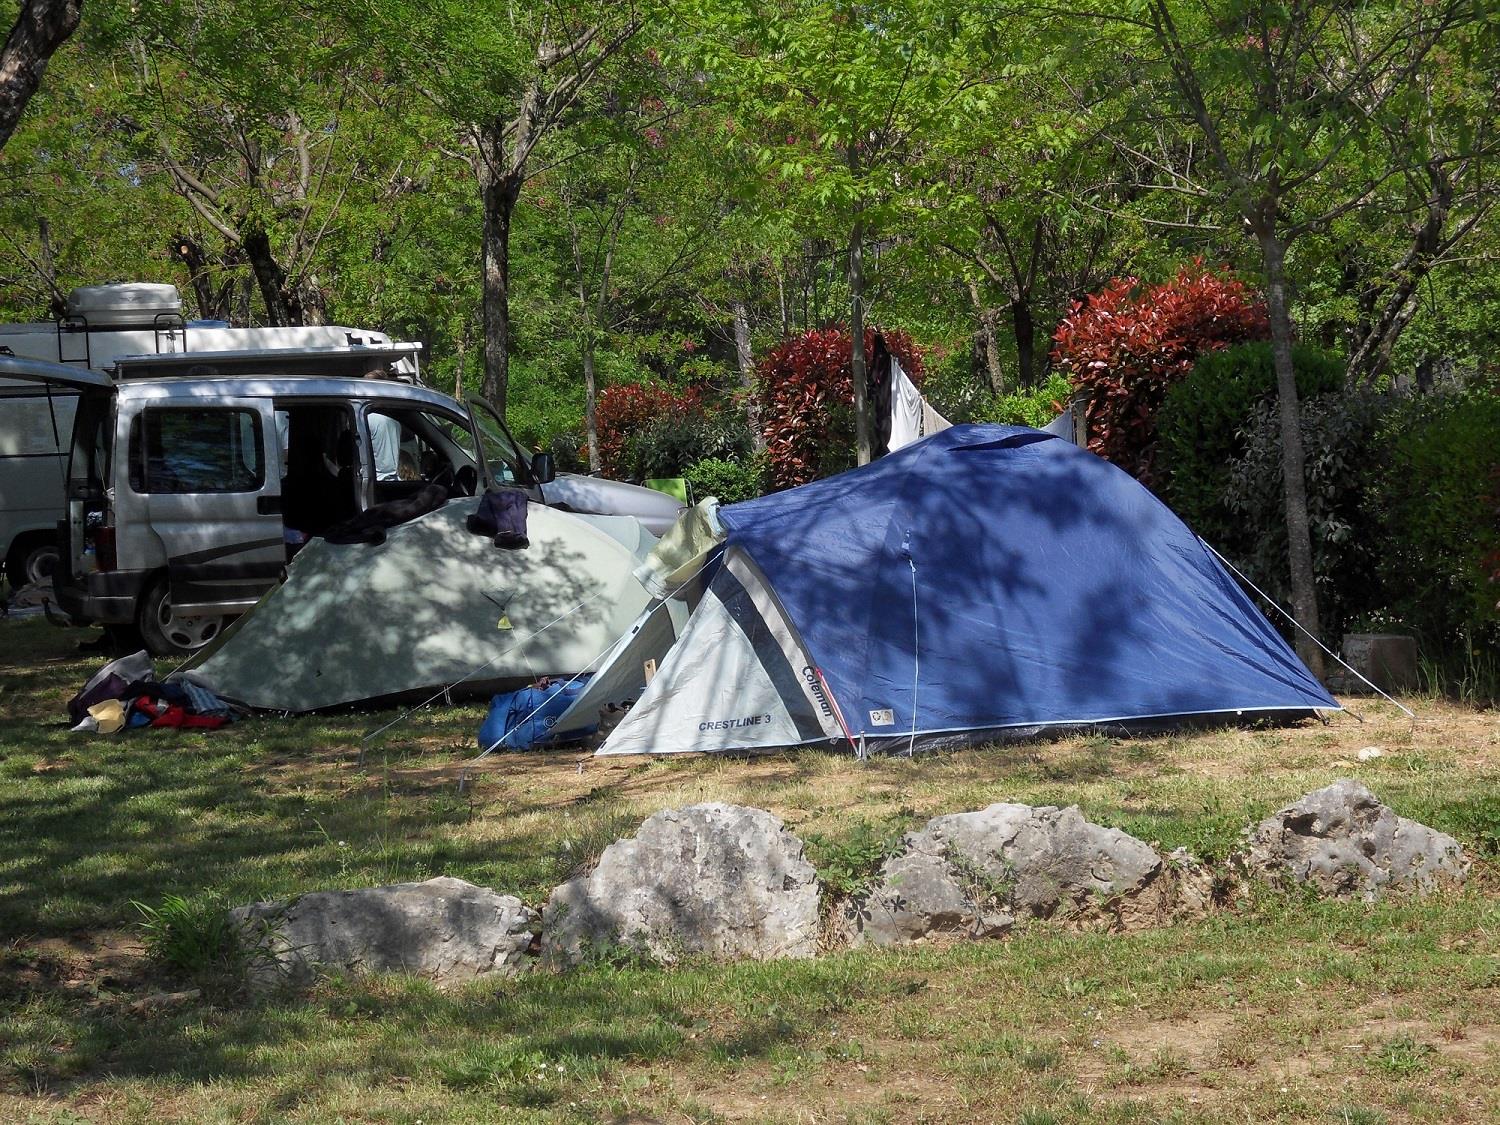 La camp. Кемпинг Лас Теджас. Заброшенный кемпинг. Резервный банк Австралии палаточный лагерь. Camping la pęrcouse.